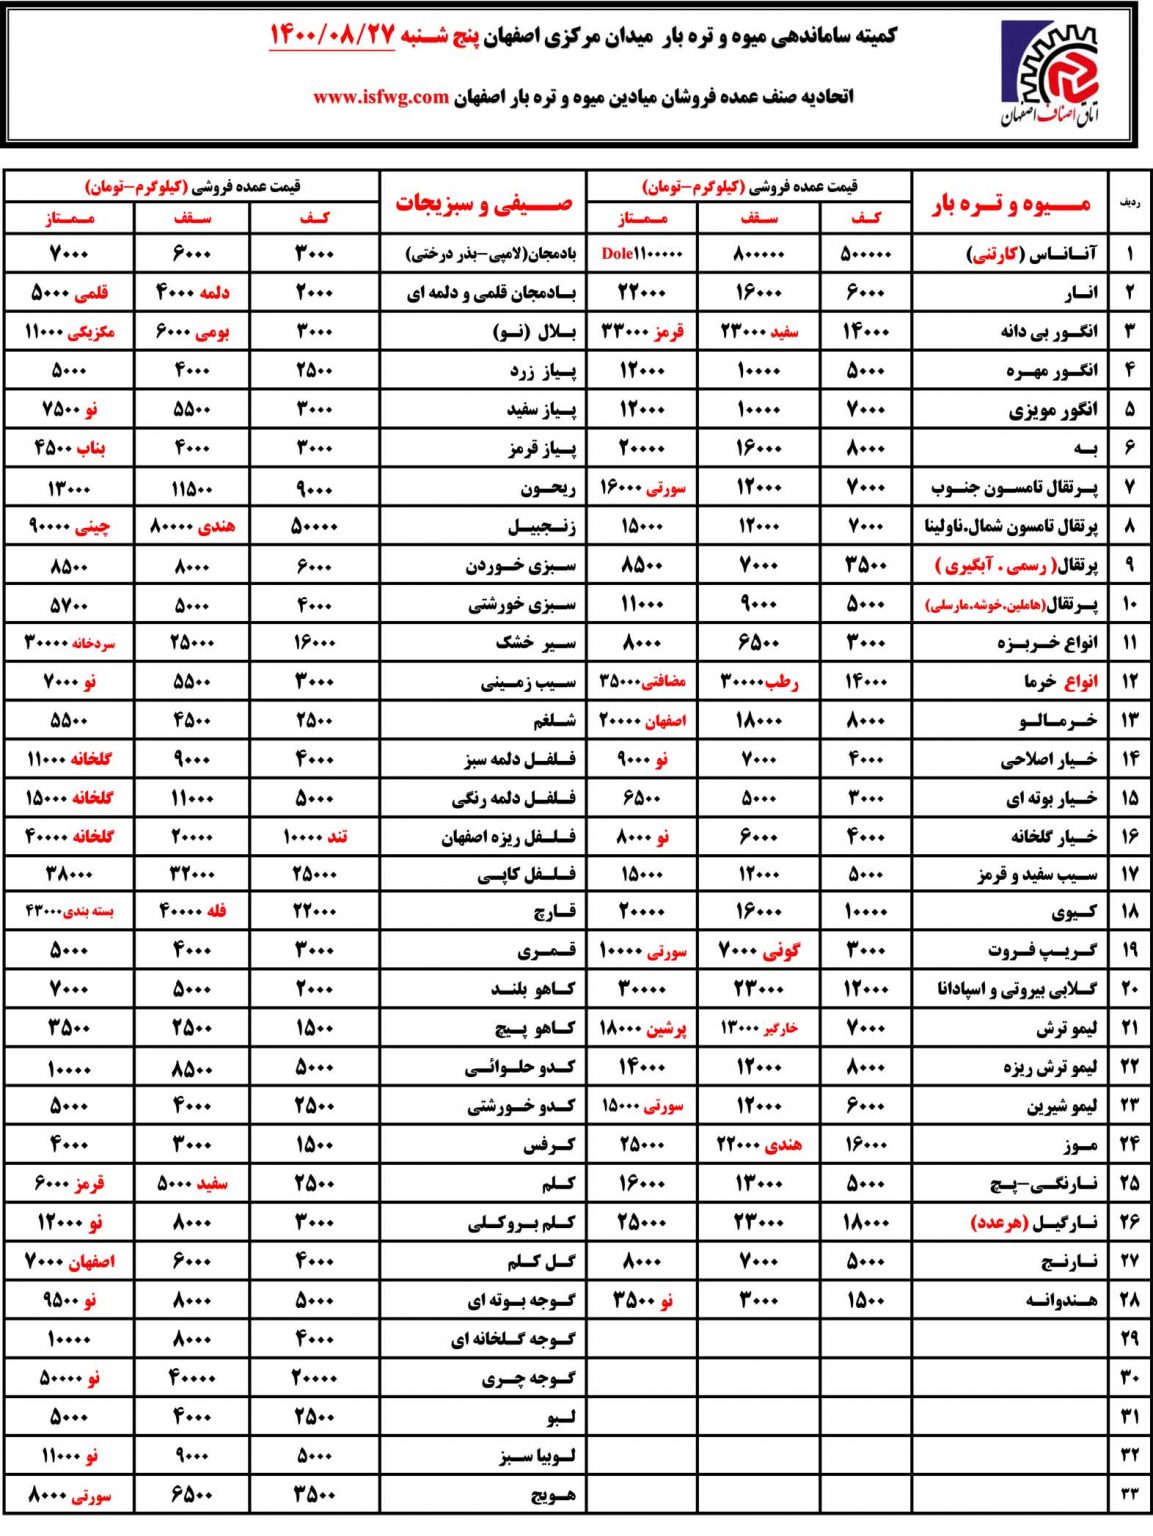 لیست قیمت روز میدان میوه اصفهان بیست و هفتم آبان 1400